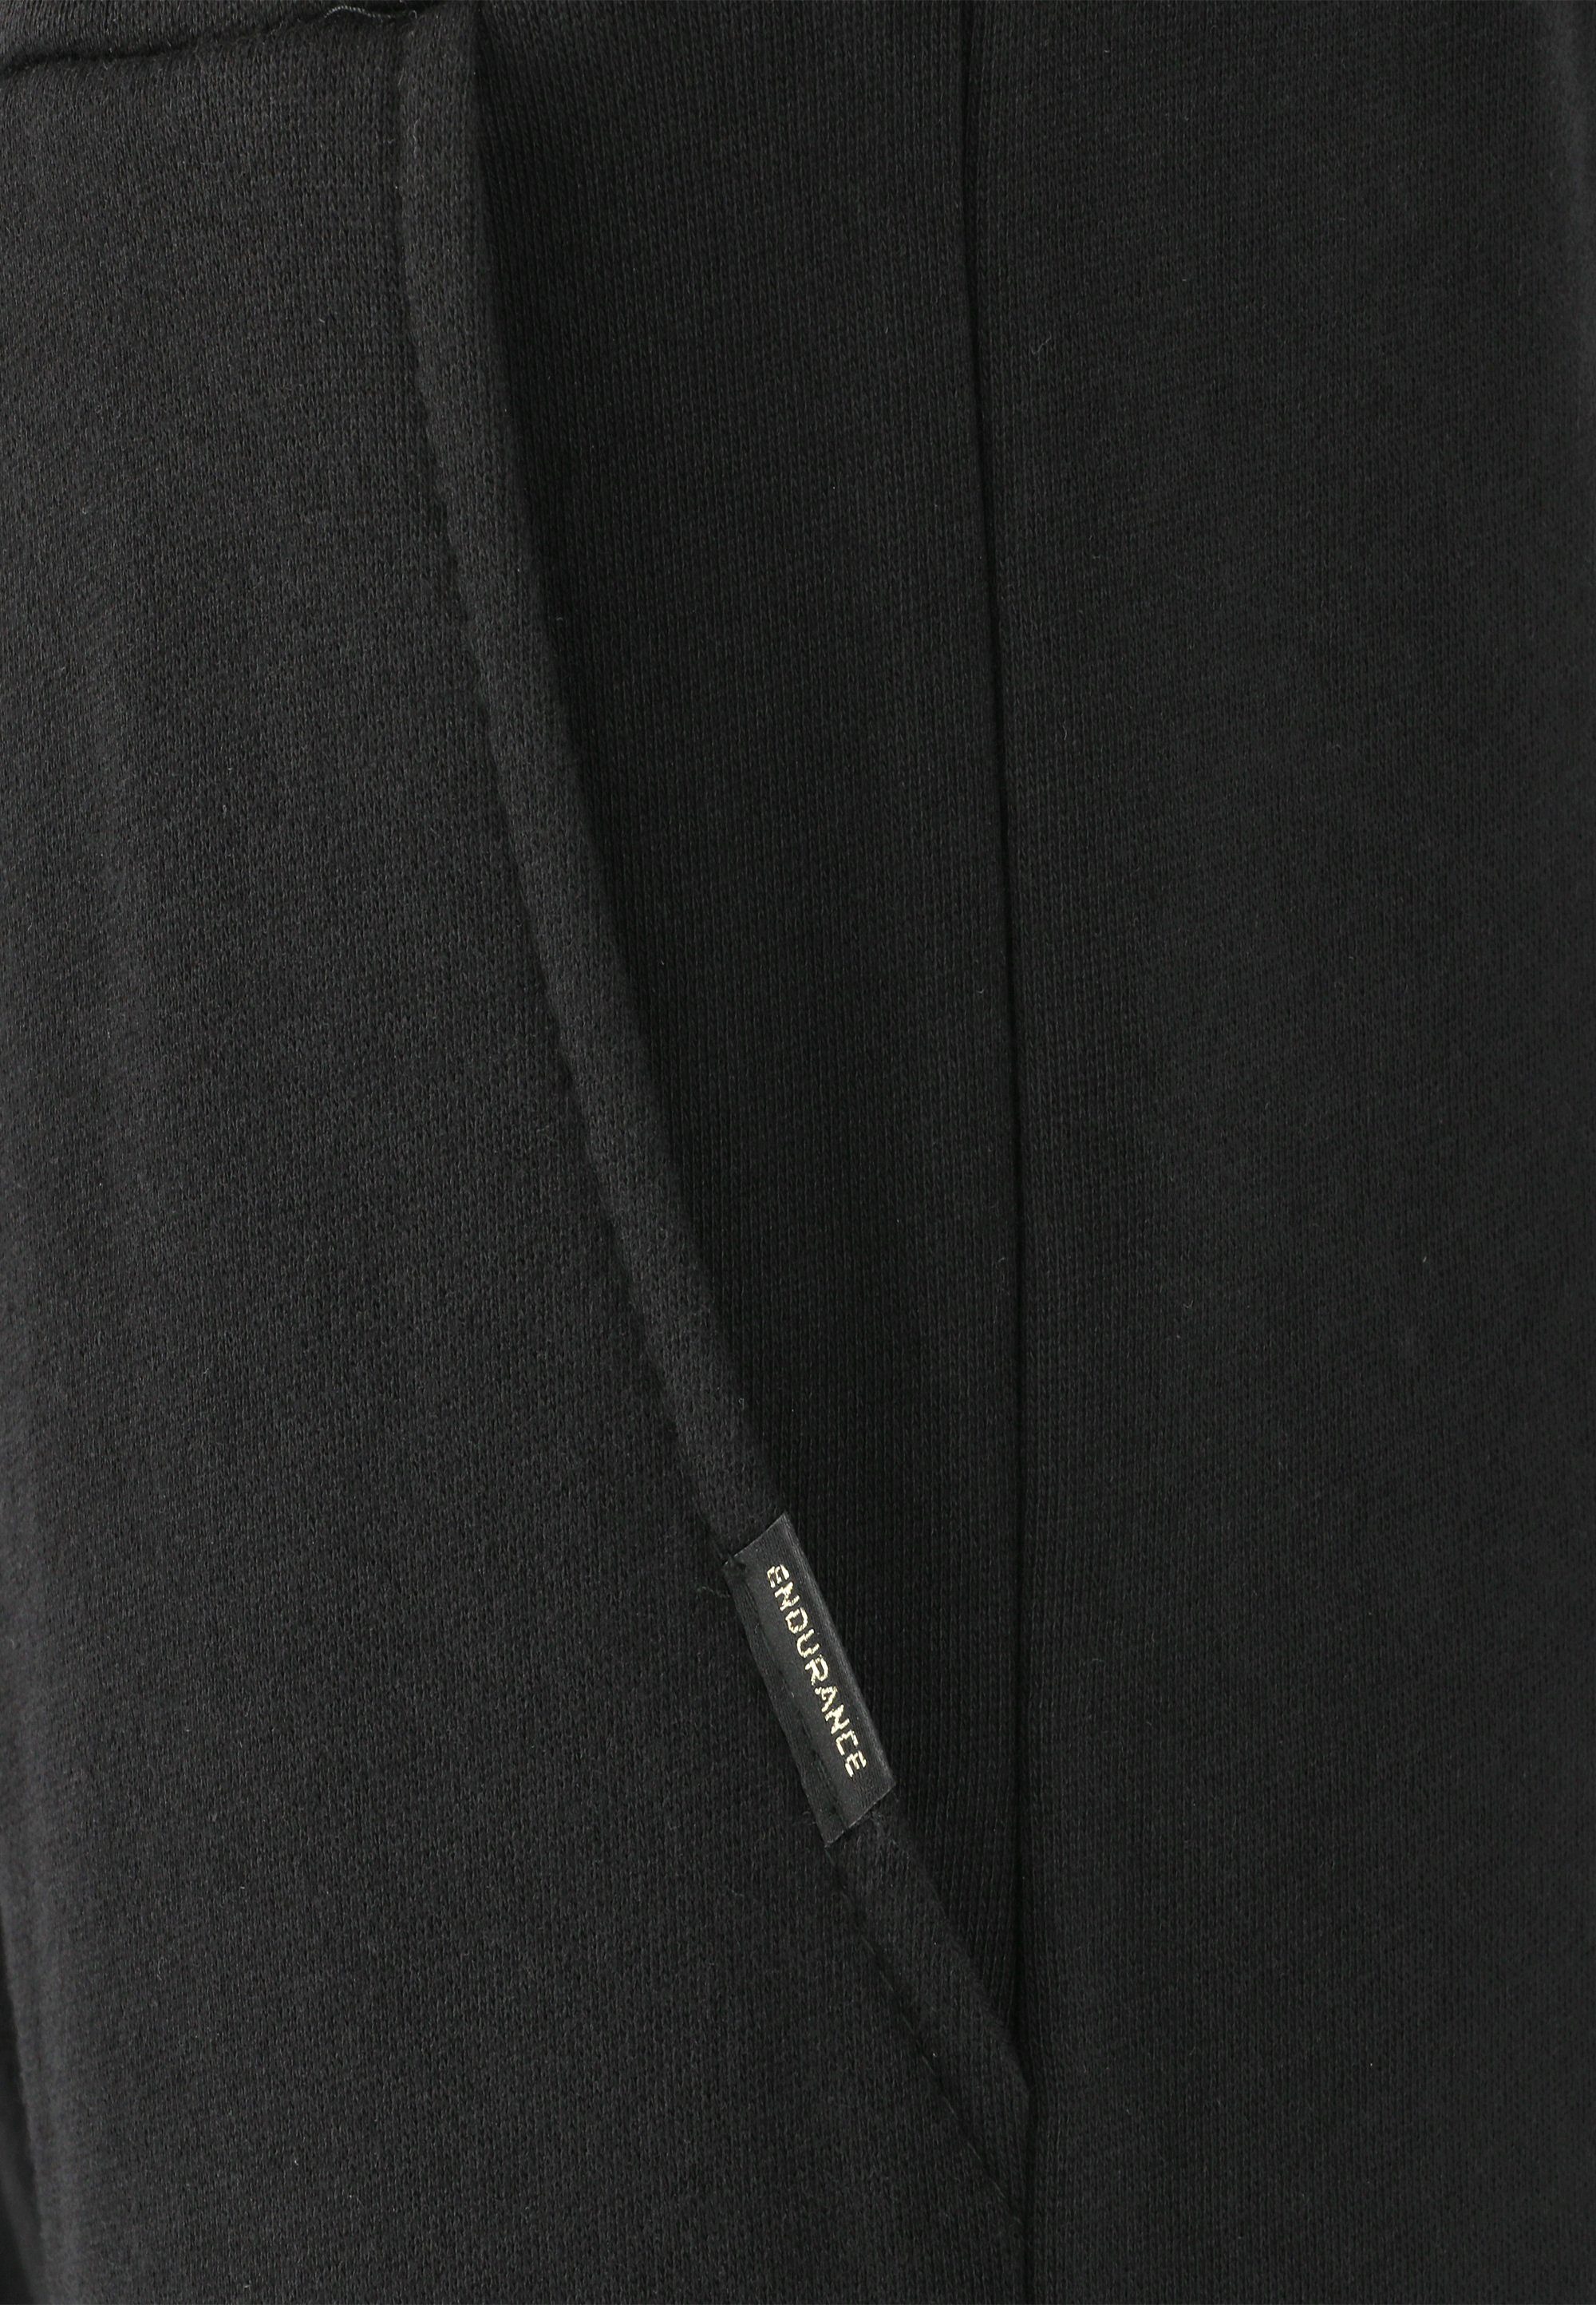 ENDURANCE Sweathose mit Beisty praktischen schwarz Seitentaschen